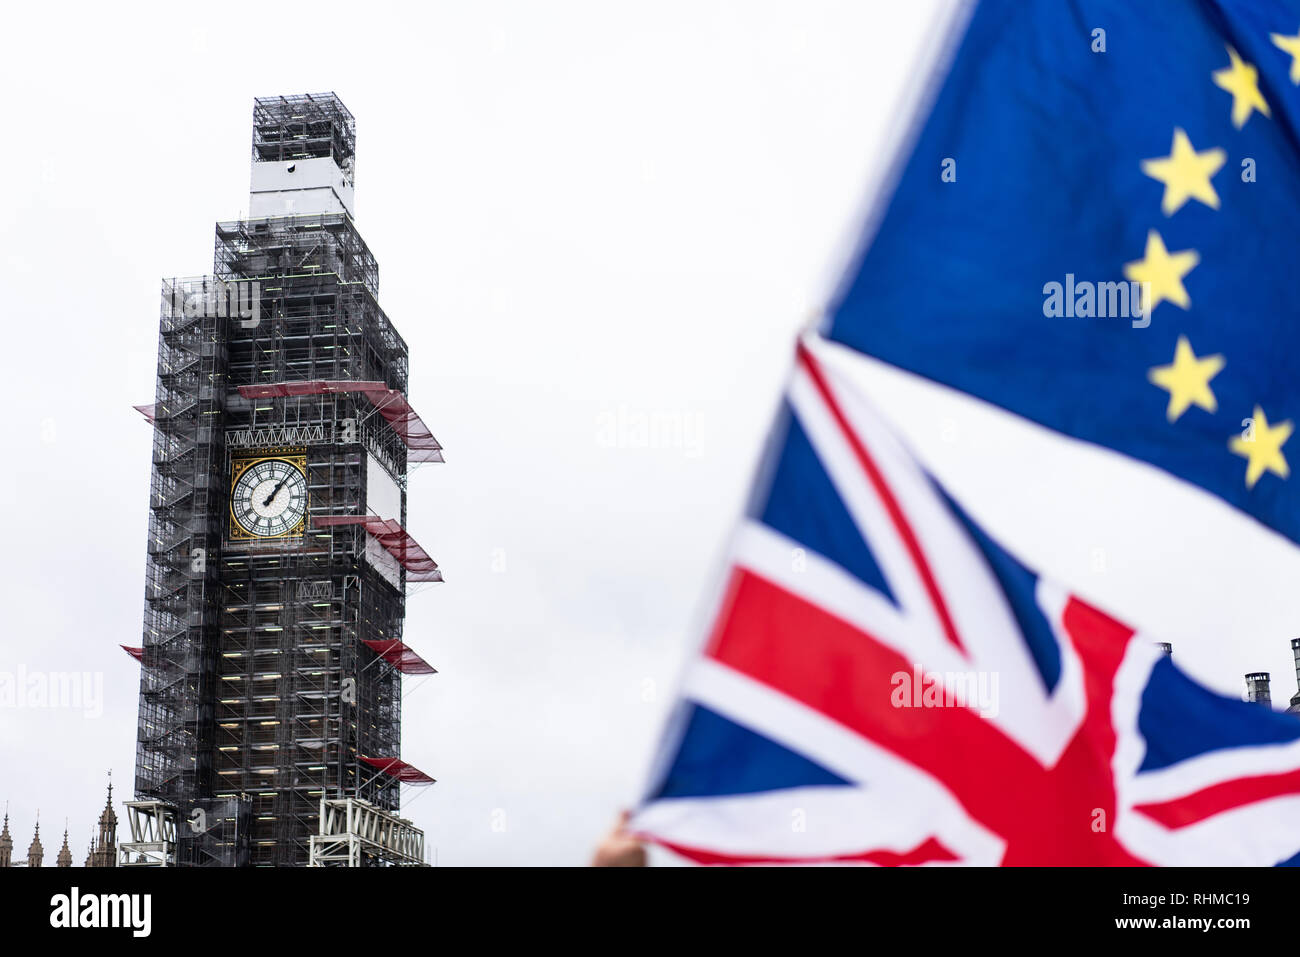 Big Ben au Parlement bénéficiant d'échafaudages avec l'Union européenne Fag et Drapeau de l'Union européenne au premier plan. London UK Banque D'Images